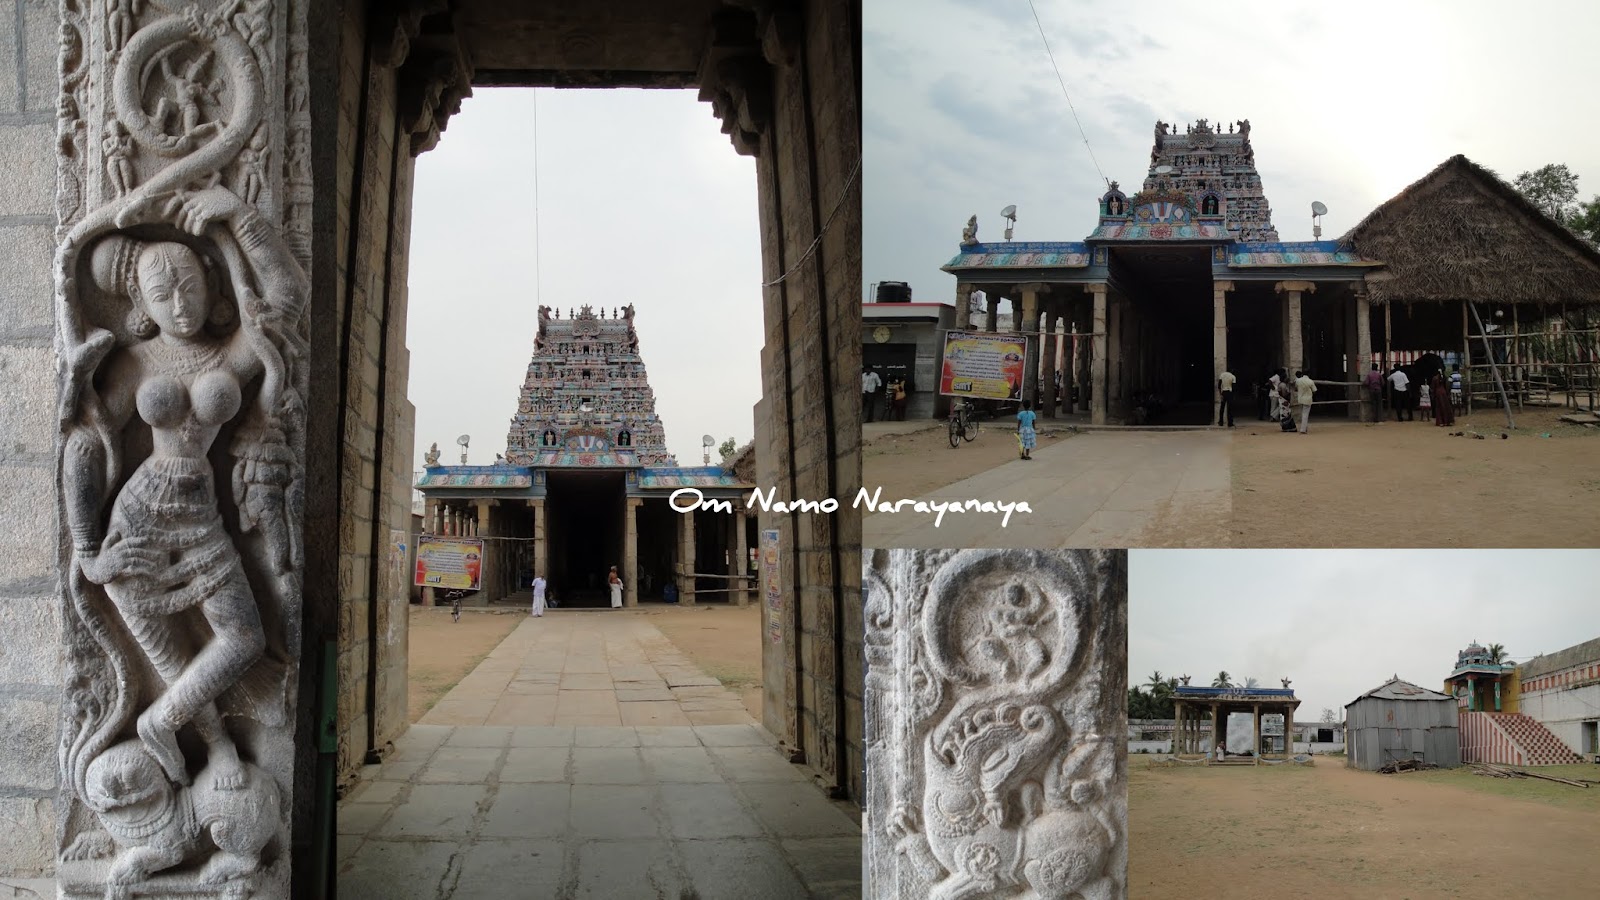 மன்னார்குடி ஸ்ரீ ராஜகோபால ஸ்வாமி கோயில்,கண்ணுக் கினியன கண்டோம்,Mannargudi Sri Rajagopalaswamy temple 